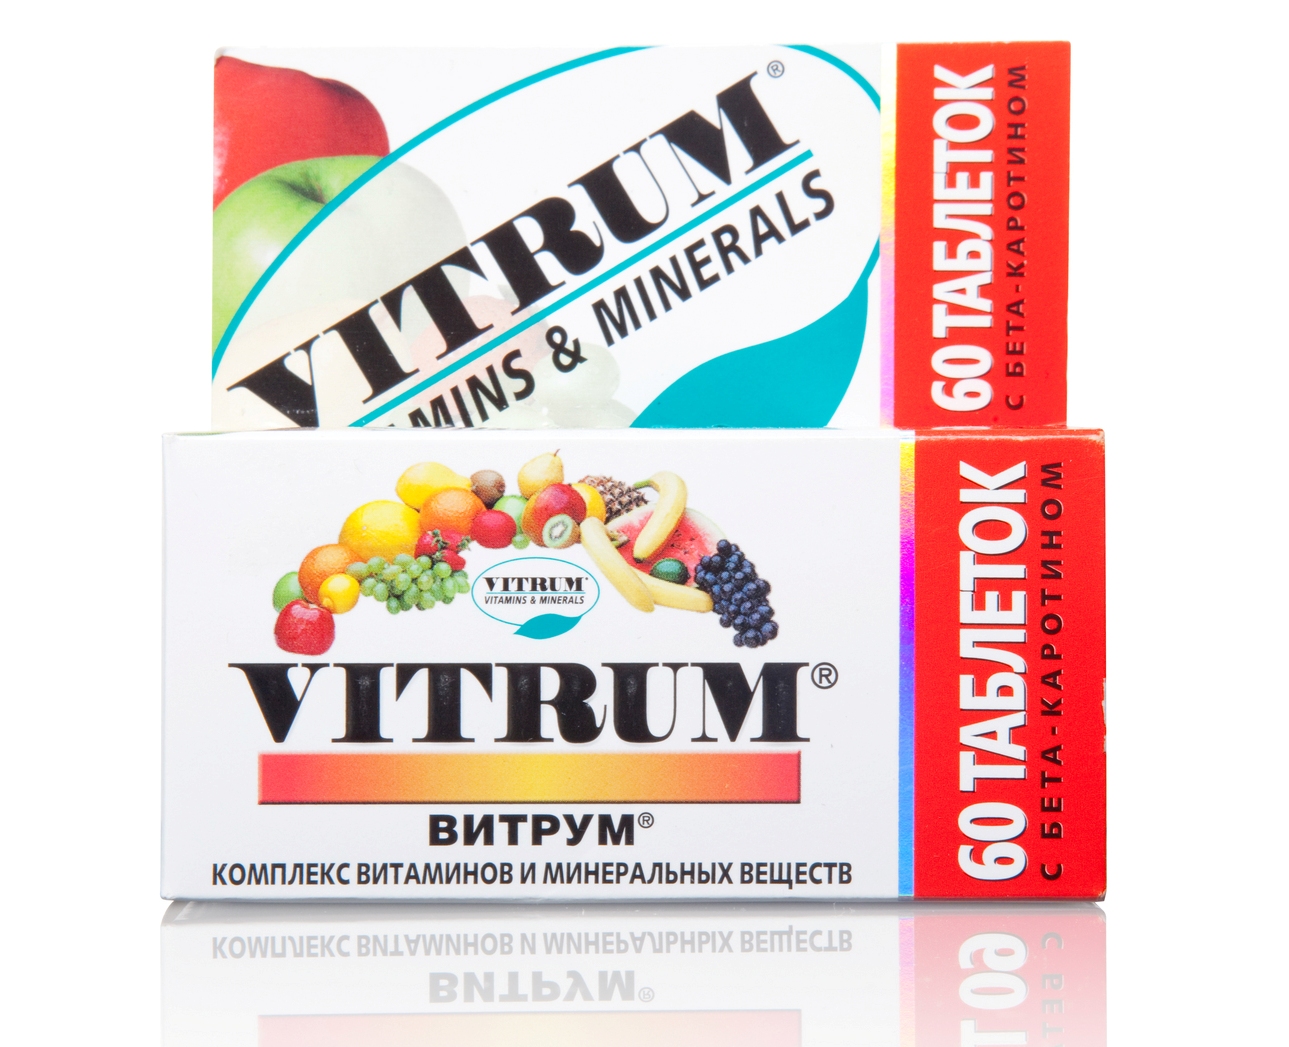 Витамины витрум для мужчин. Витаминный комплекс. Комплексные витамины. Комплекс витаминов для мужчин. Витрум мужские витамины.